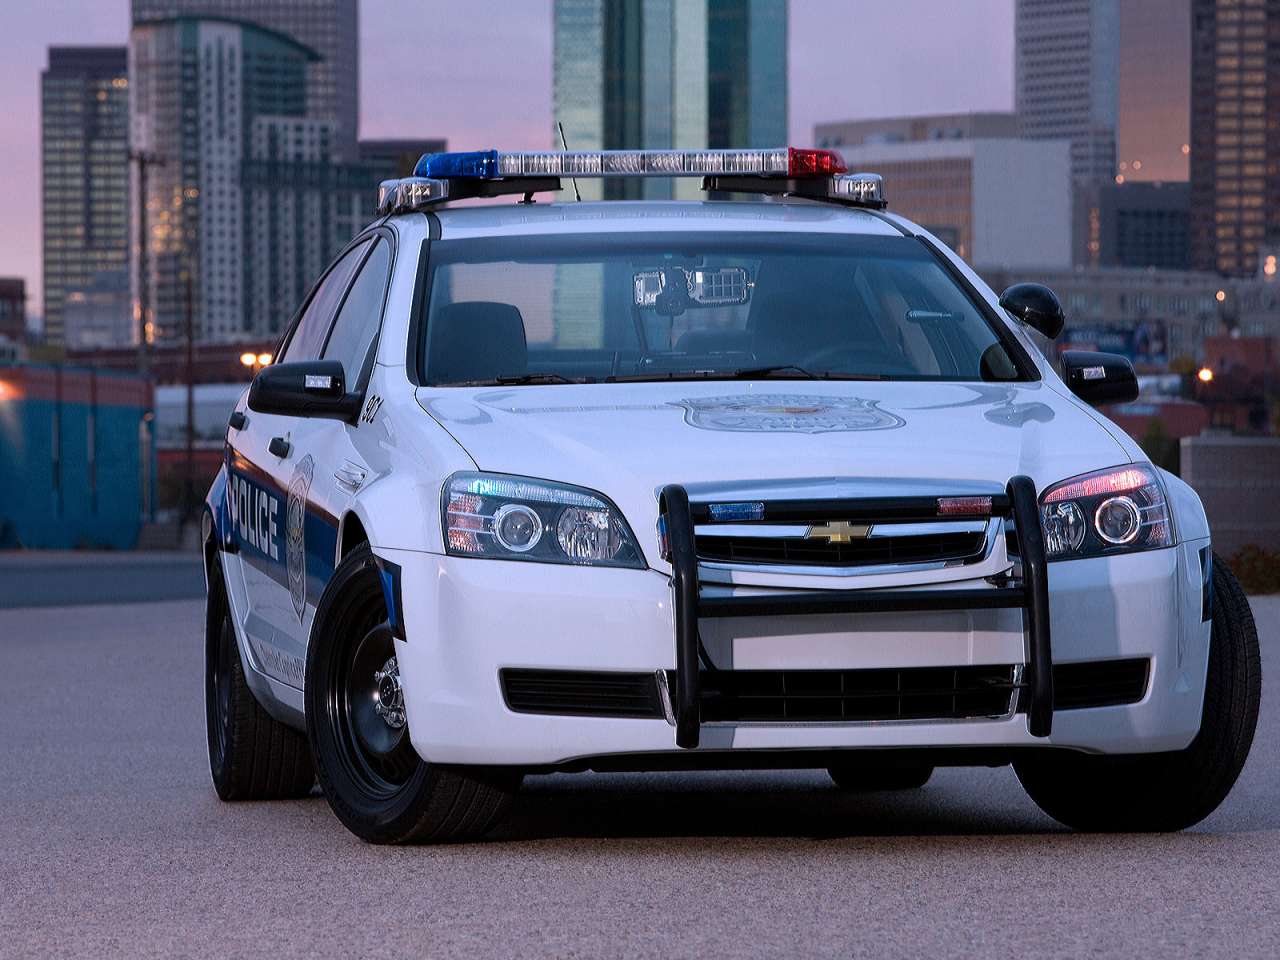 Город, вечер, полицейское авто, Chevrollet-Caprice-Police-Patrol-Vehicle